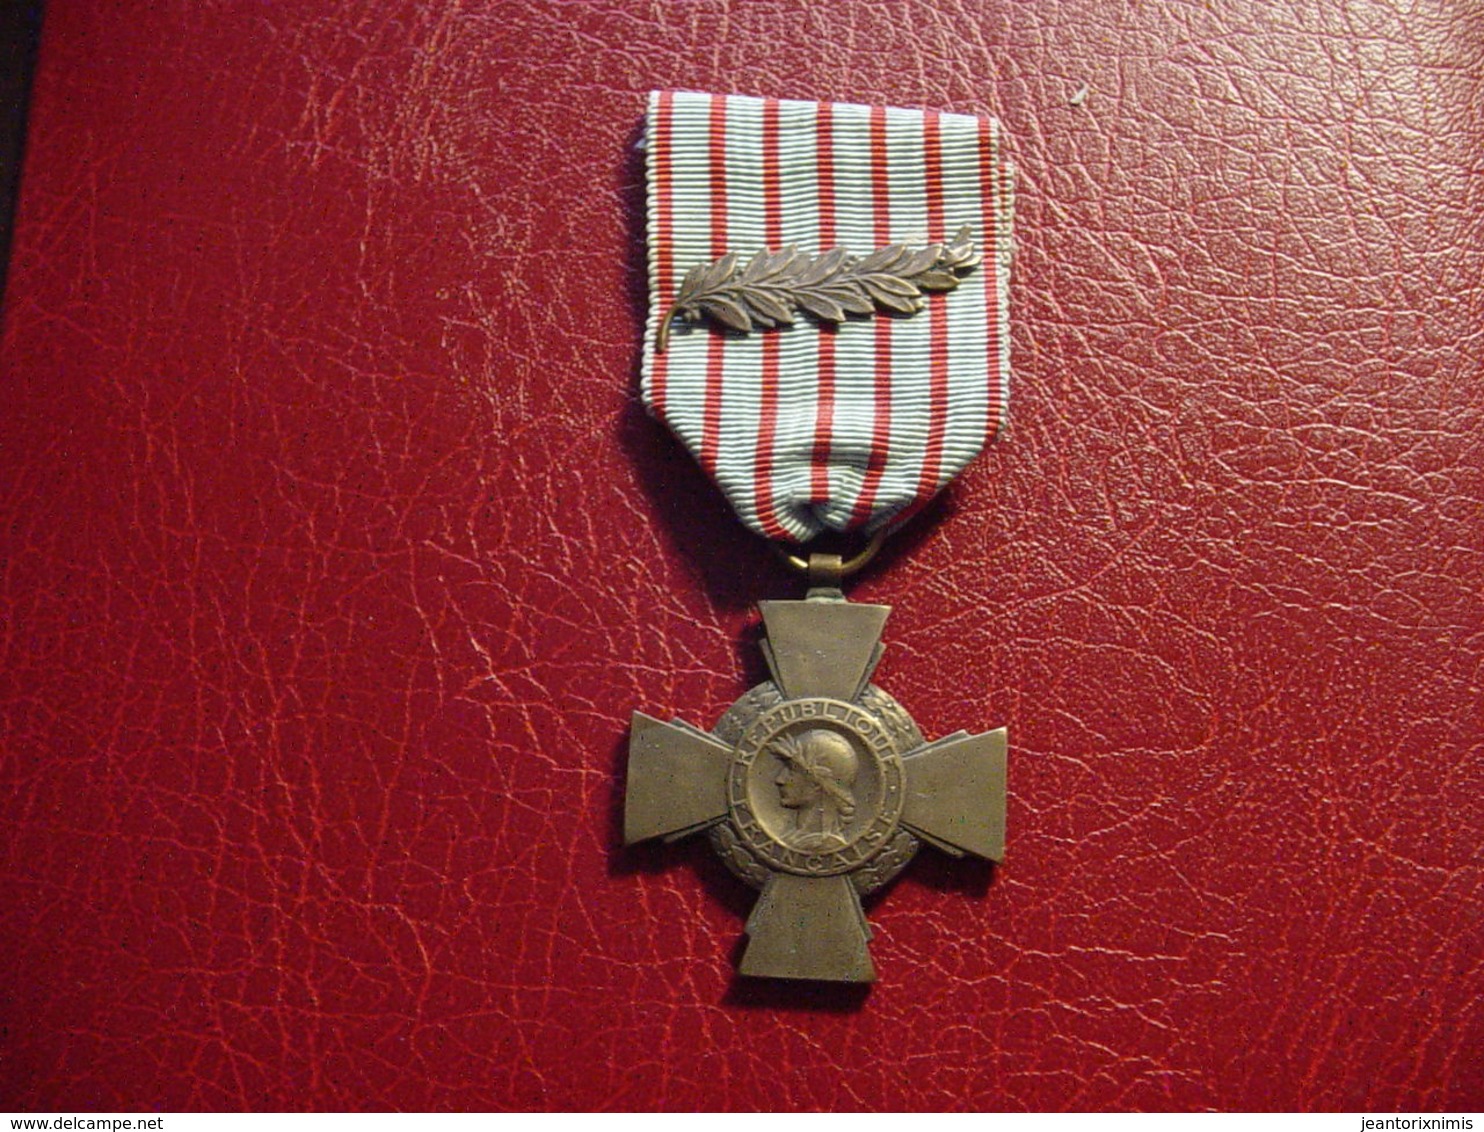 Médaille République Française : "Croix Du Combattant Avec Palme" : 1914 - 1918 - France